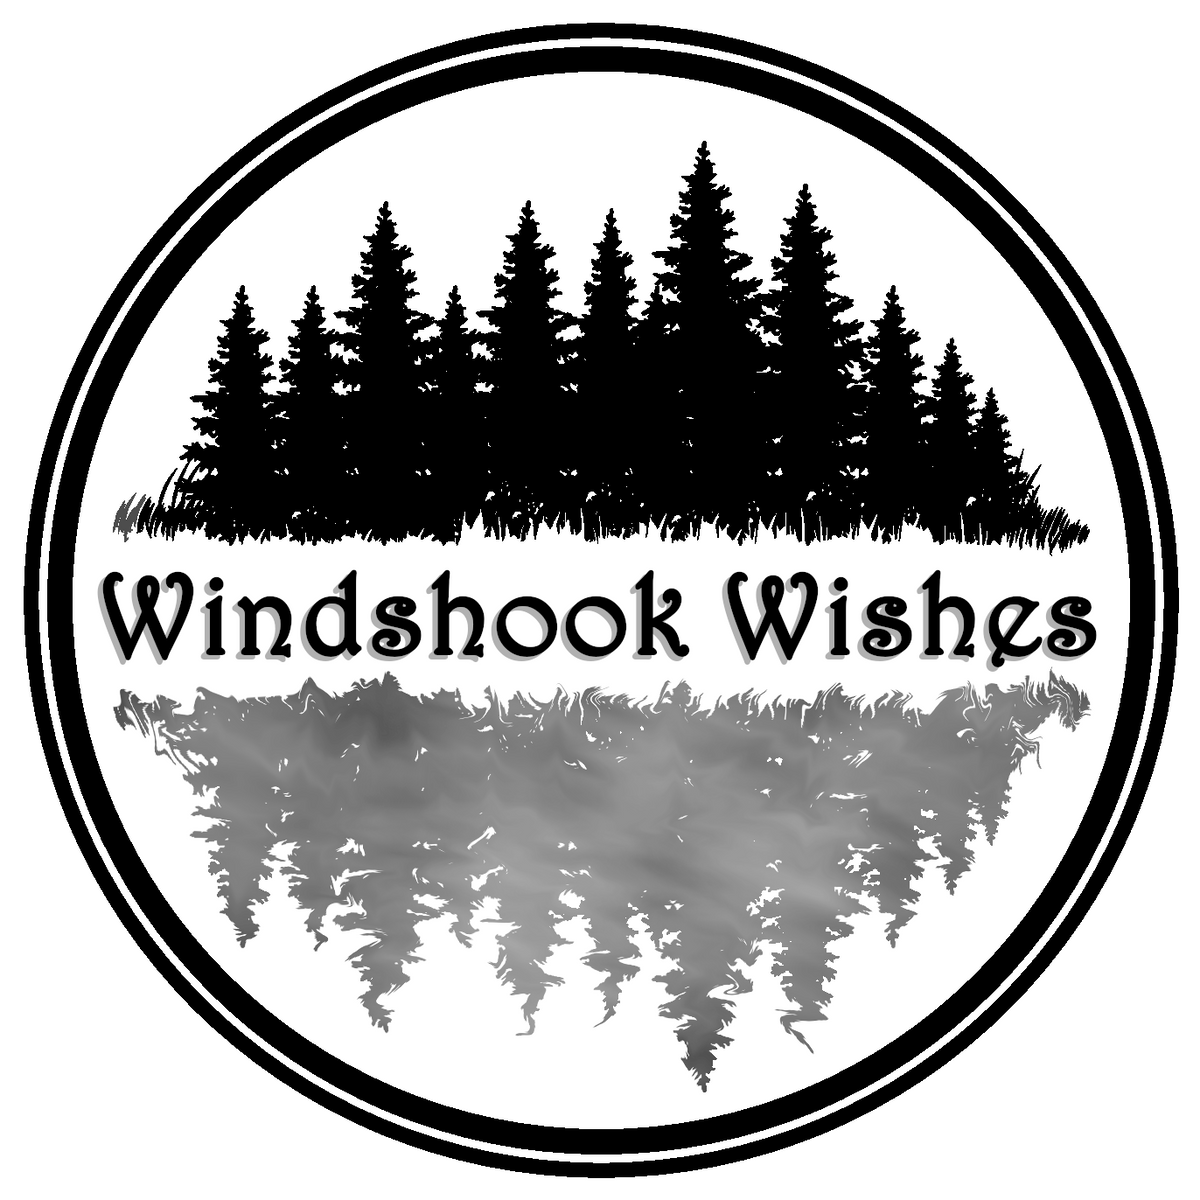 WindshookWishes